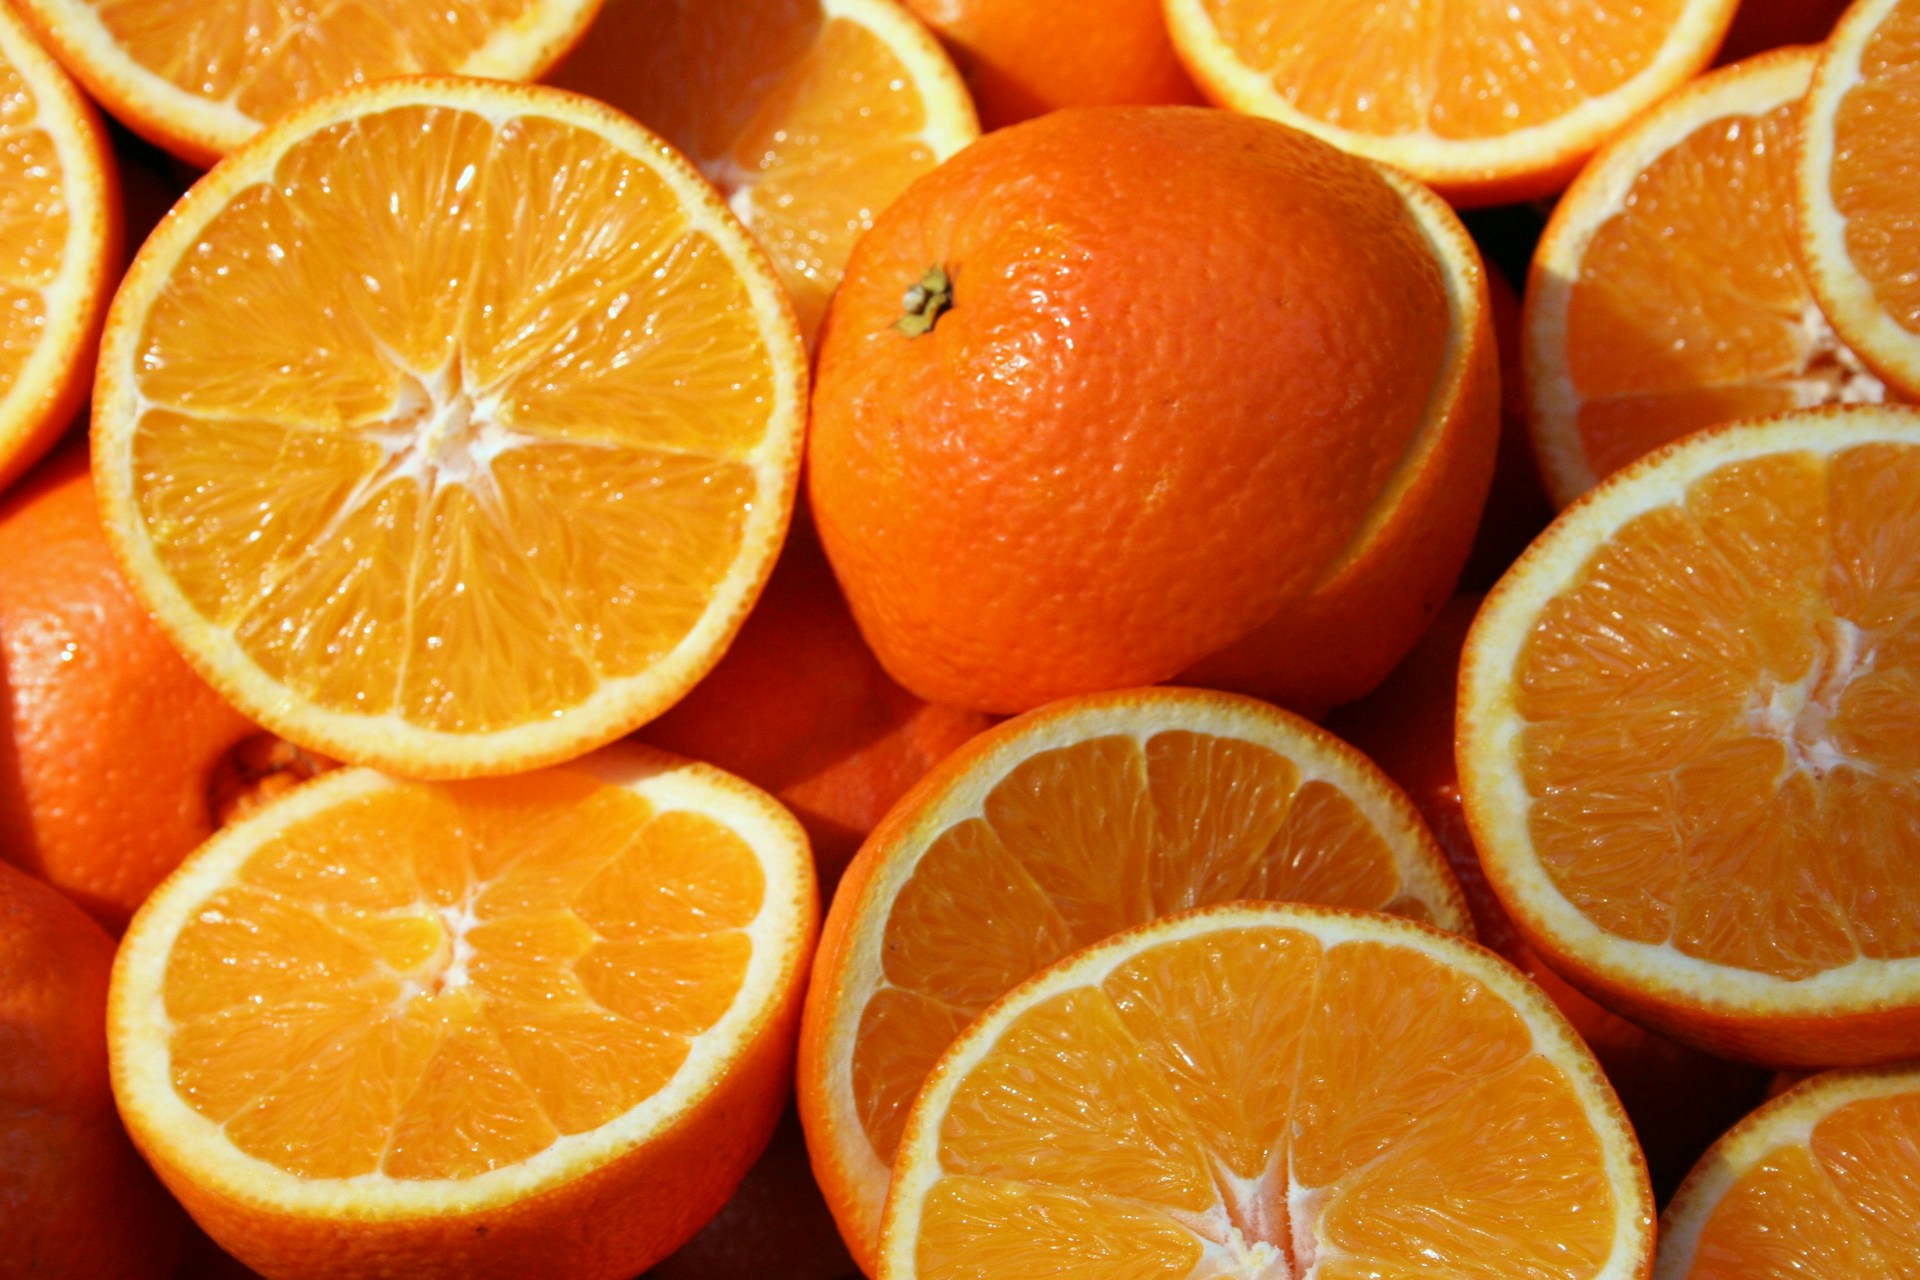 انخفاض أسعار البرتقال في مصر إلى 15 سنتًا للكيلوجرام: البحث العاجل عن أسواق جديدة